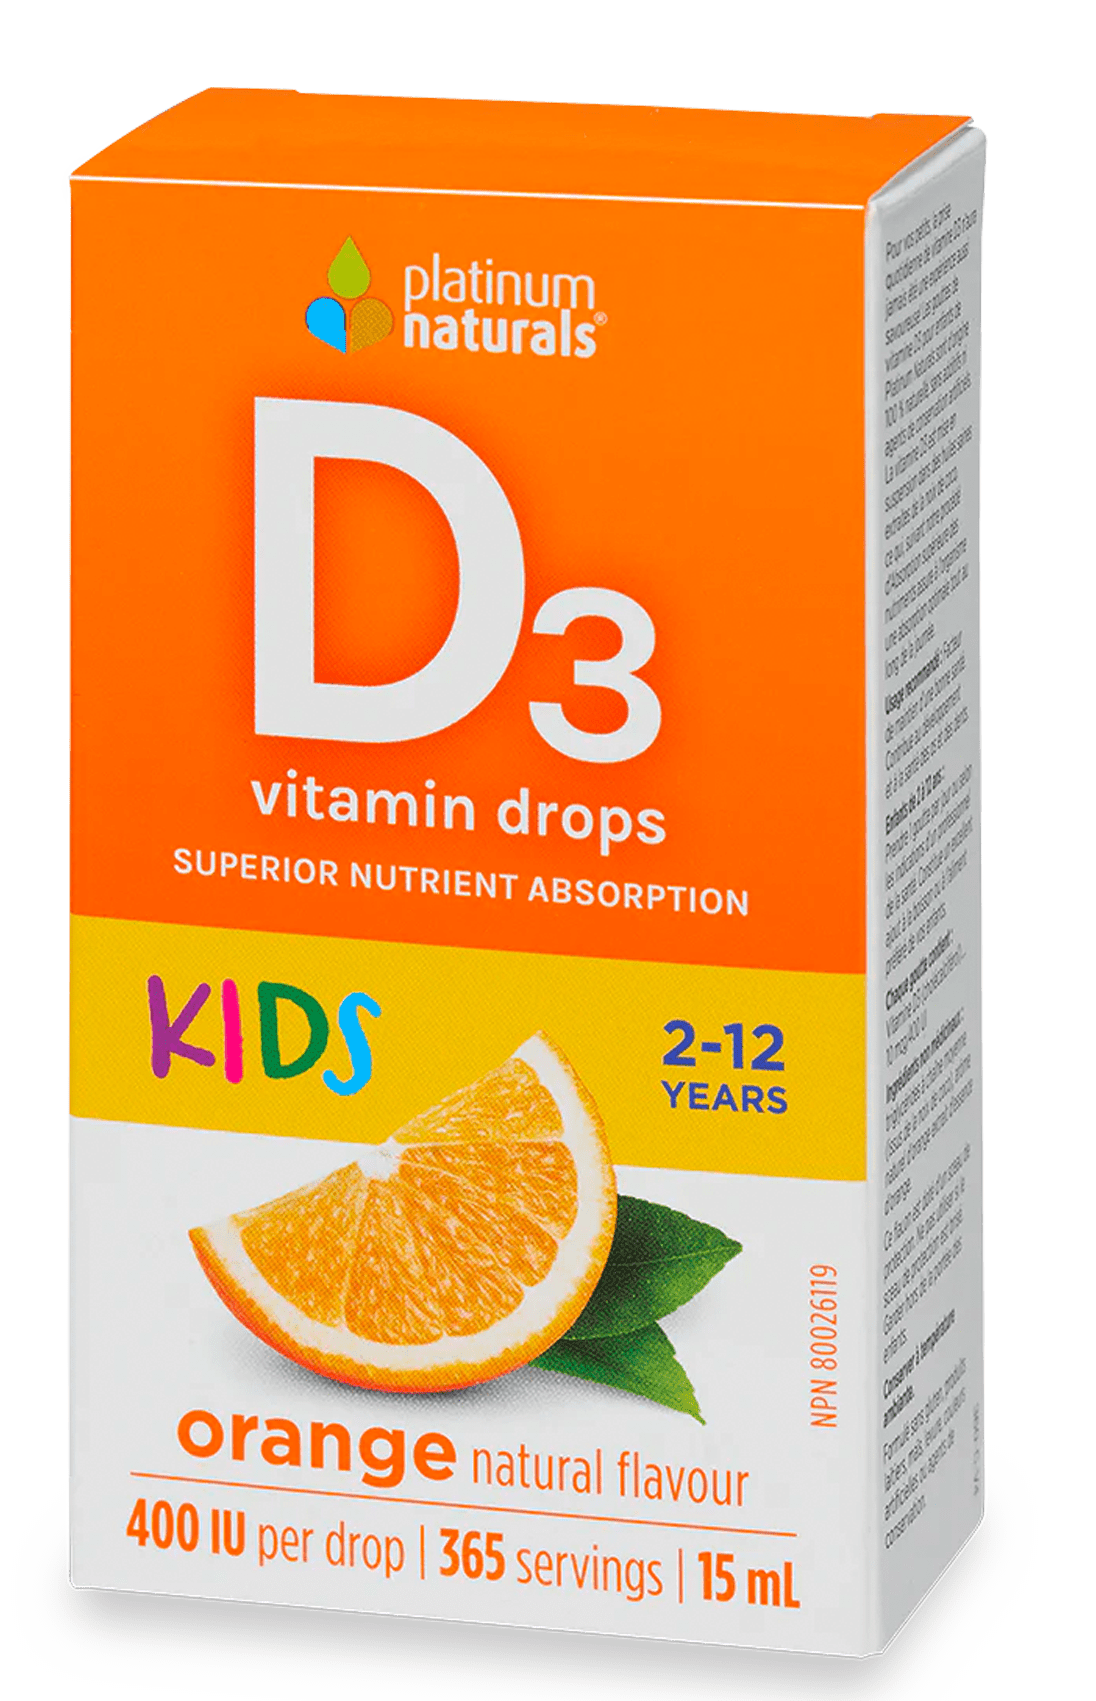 Vitamin D3 Drops for Kids cg-dev-platinumnaturals 15 ml 